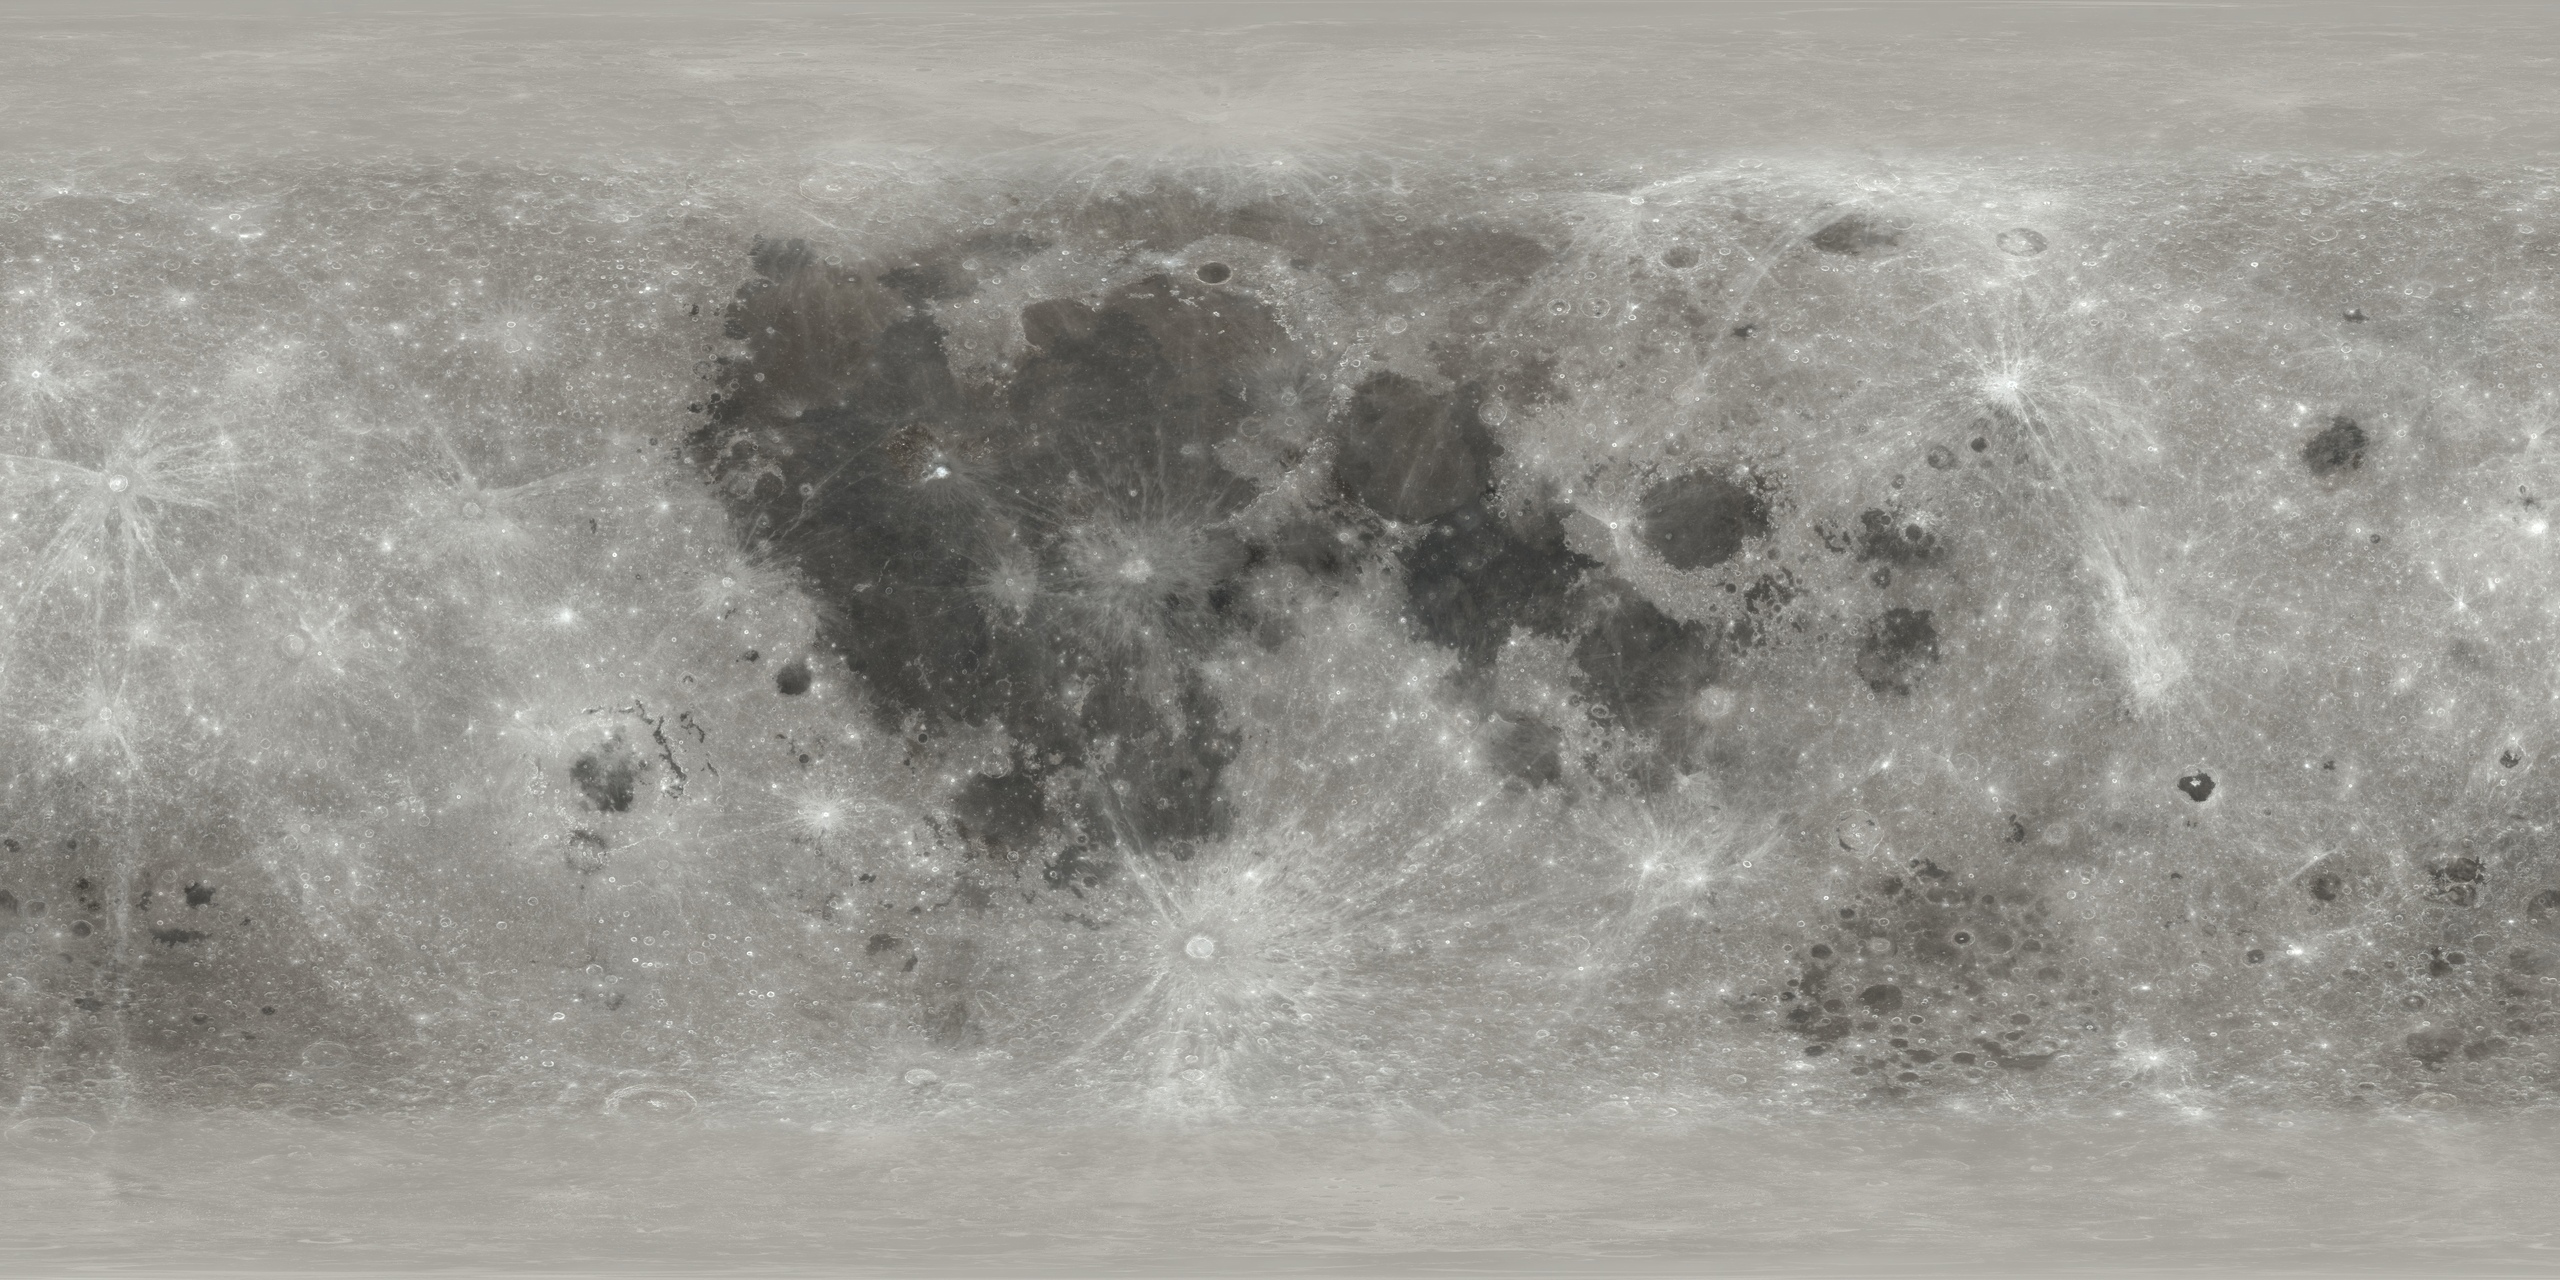 Цветная карта лунной поверхности из статьи НАСА: https://svs.gsfc.nasa.gov/cgi-bin/details.cgi?aid=4720